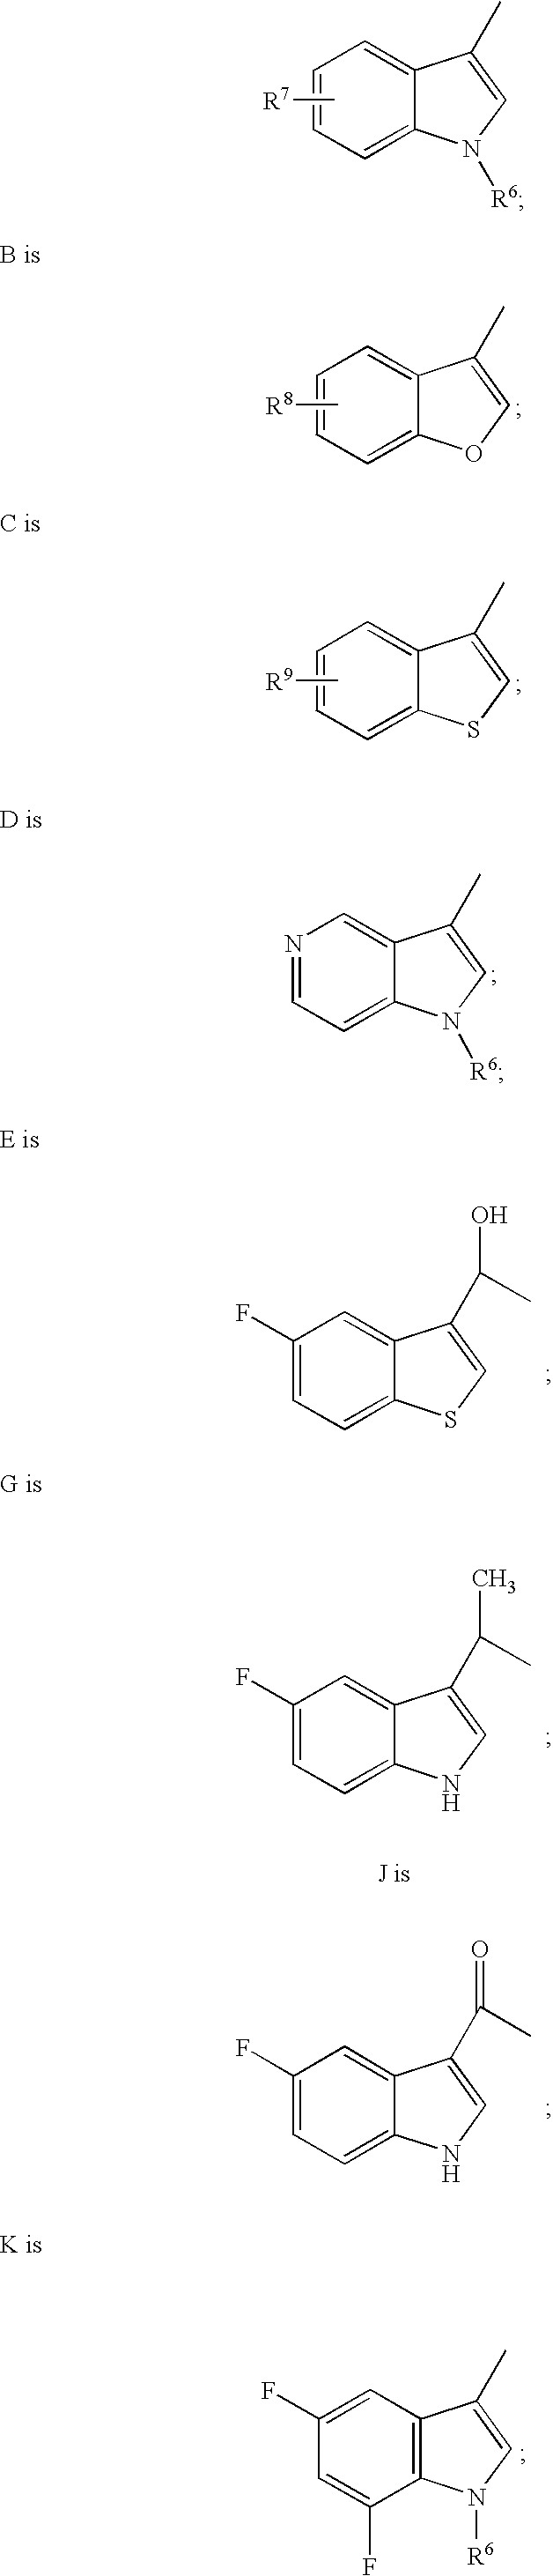 3-Amino chroman and 2-amino tetralin derivatives